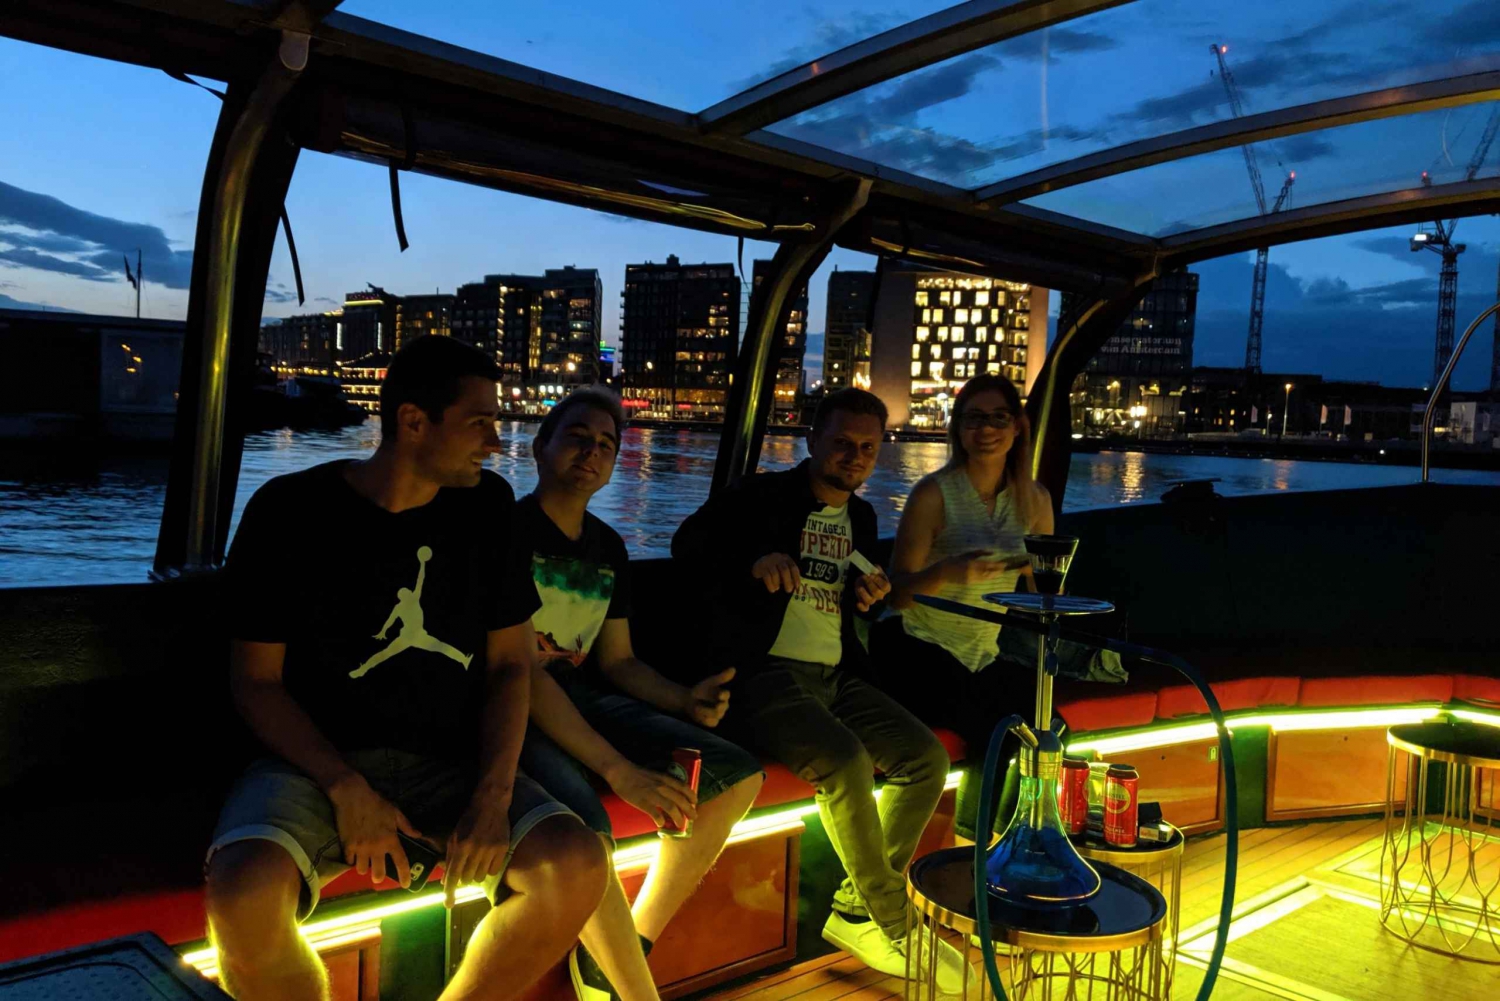 Amsterdam: Smoke & Lounge 70-Minute Boat Tour